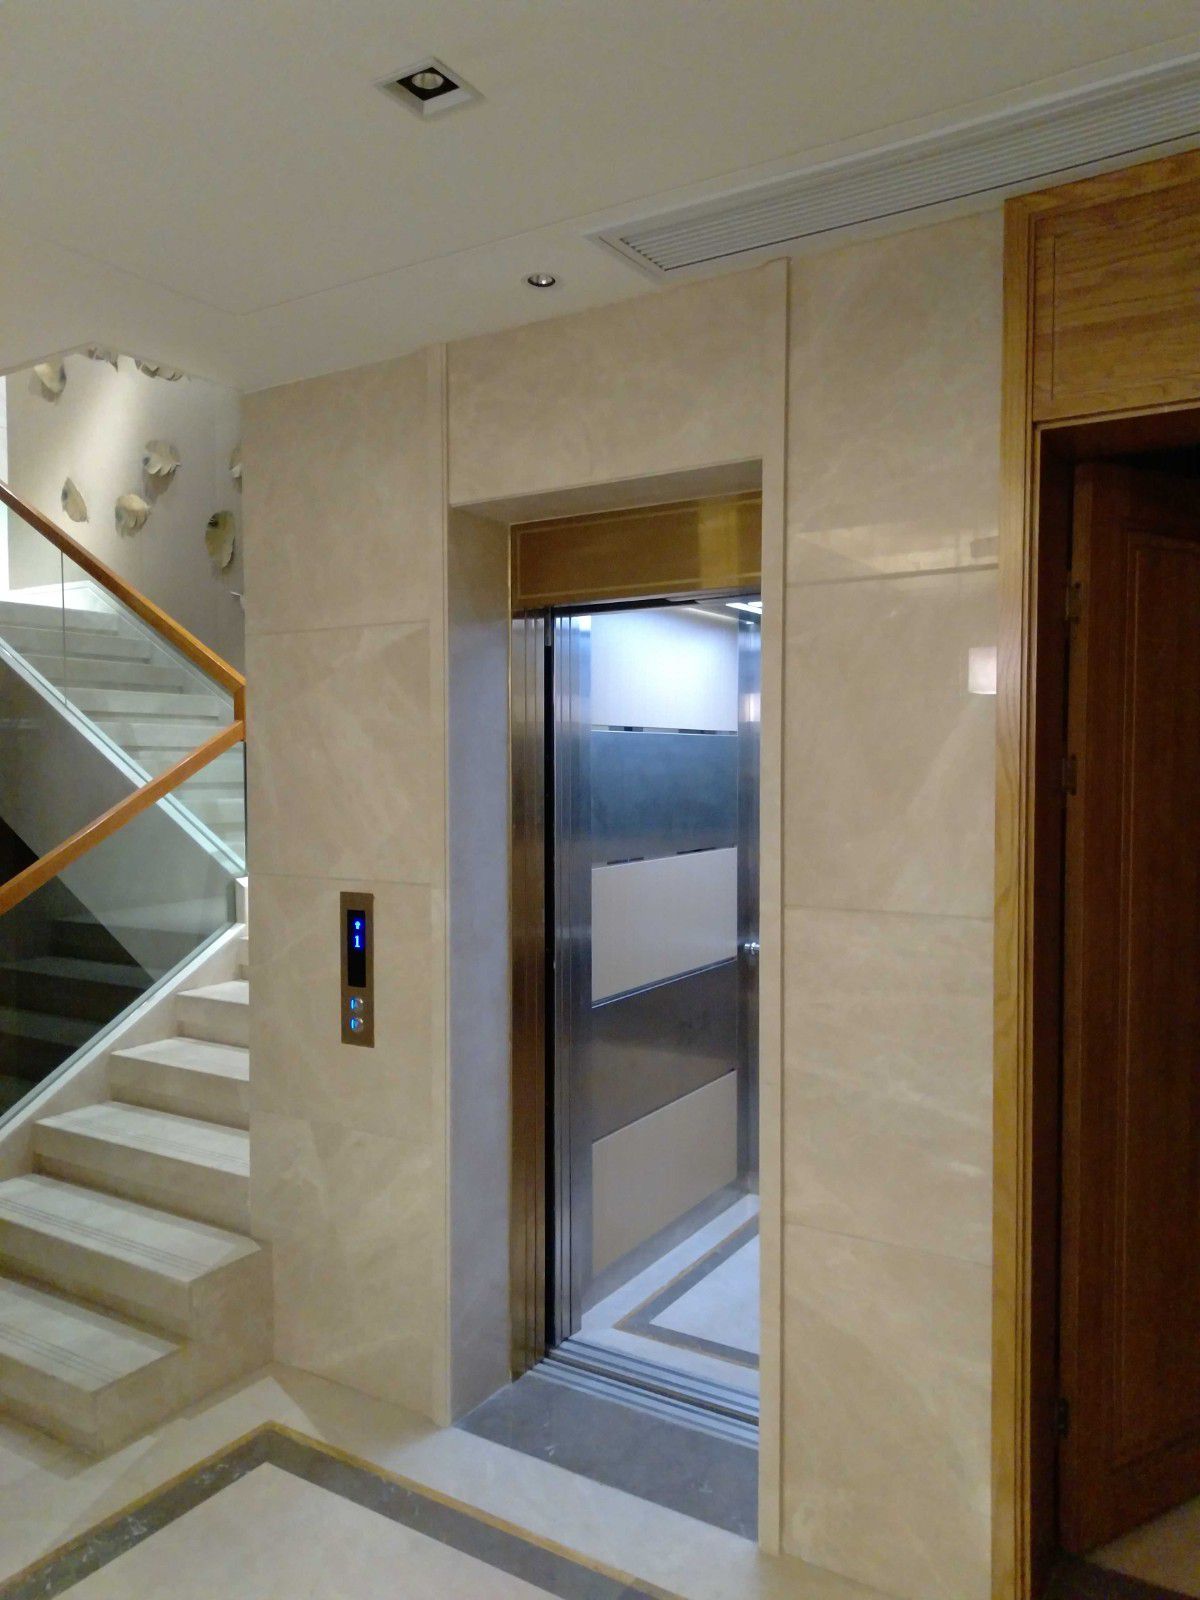 신시 내 티3층짜리 소형 가정용 엘리베이터가공 기계의 기능은 무엇입니까?